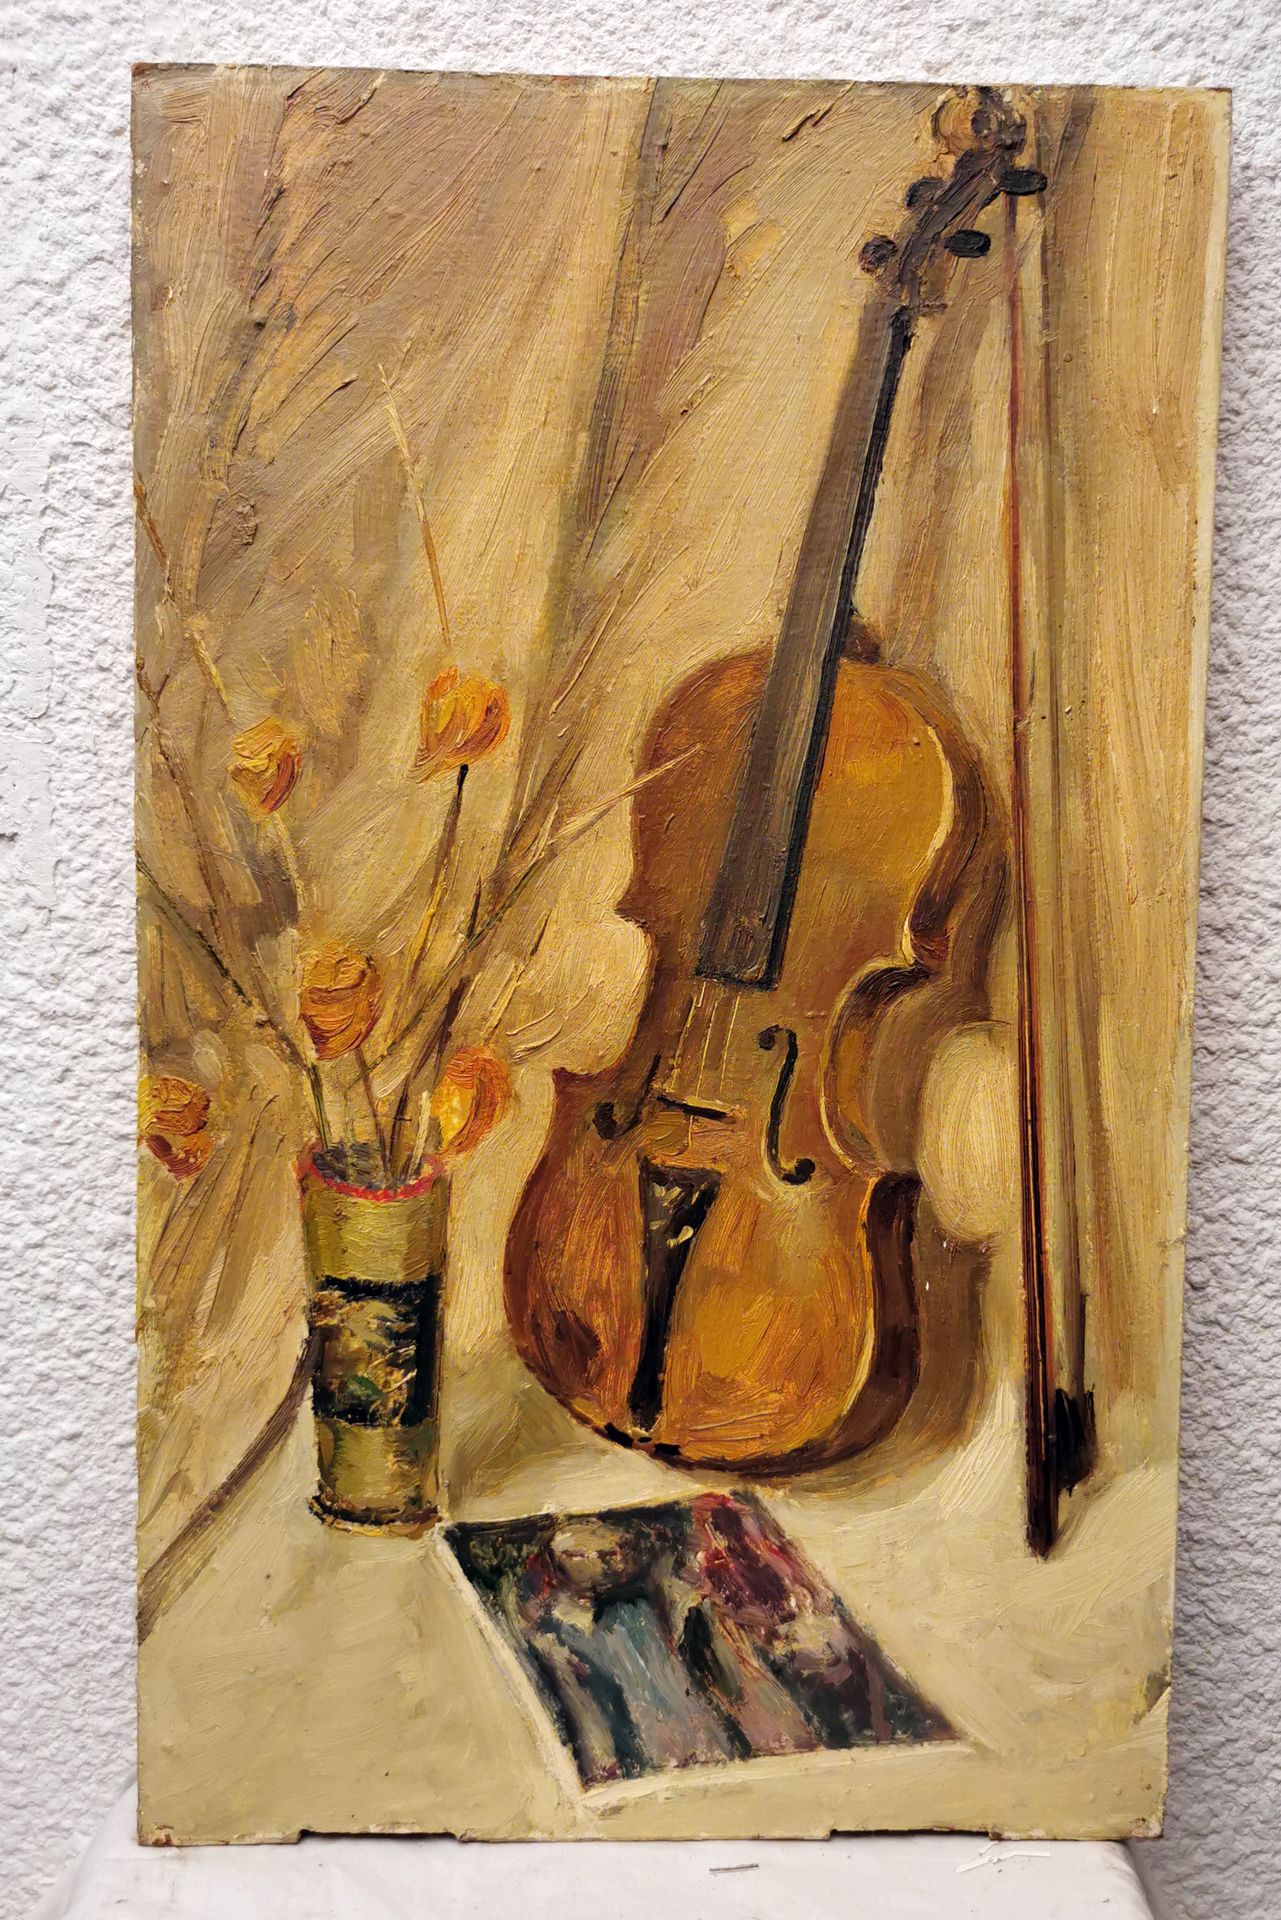 A.STEPANOK A.斯泰潘诺克，有标题，背面有签名，日期为1991年，"有小提琴的静物"，64x39，无画框。